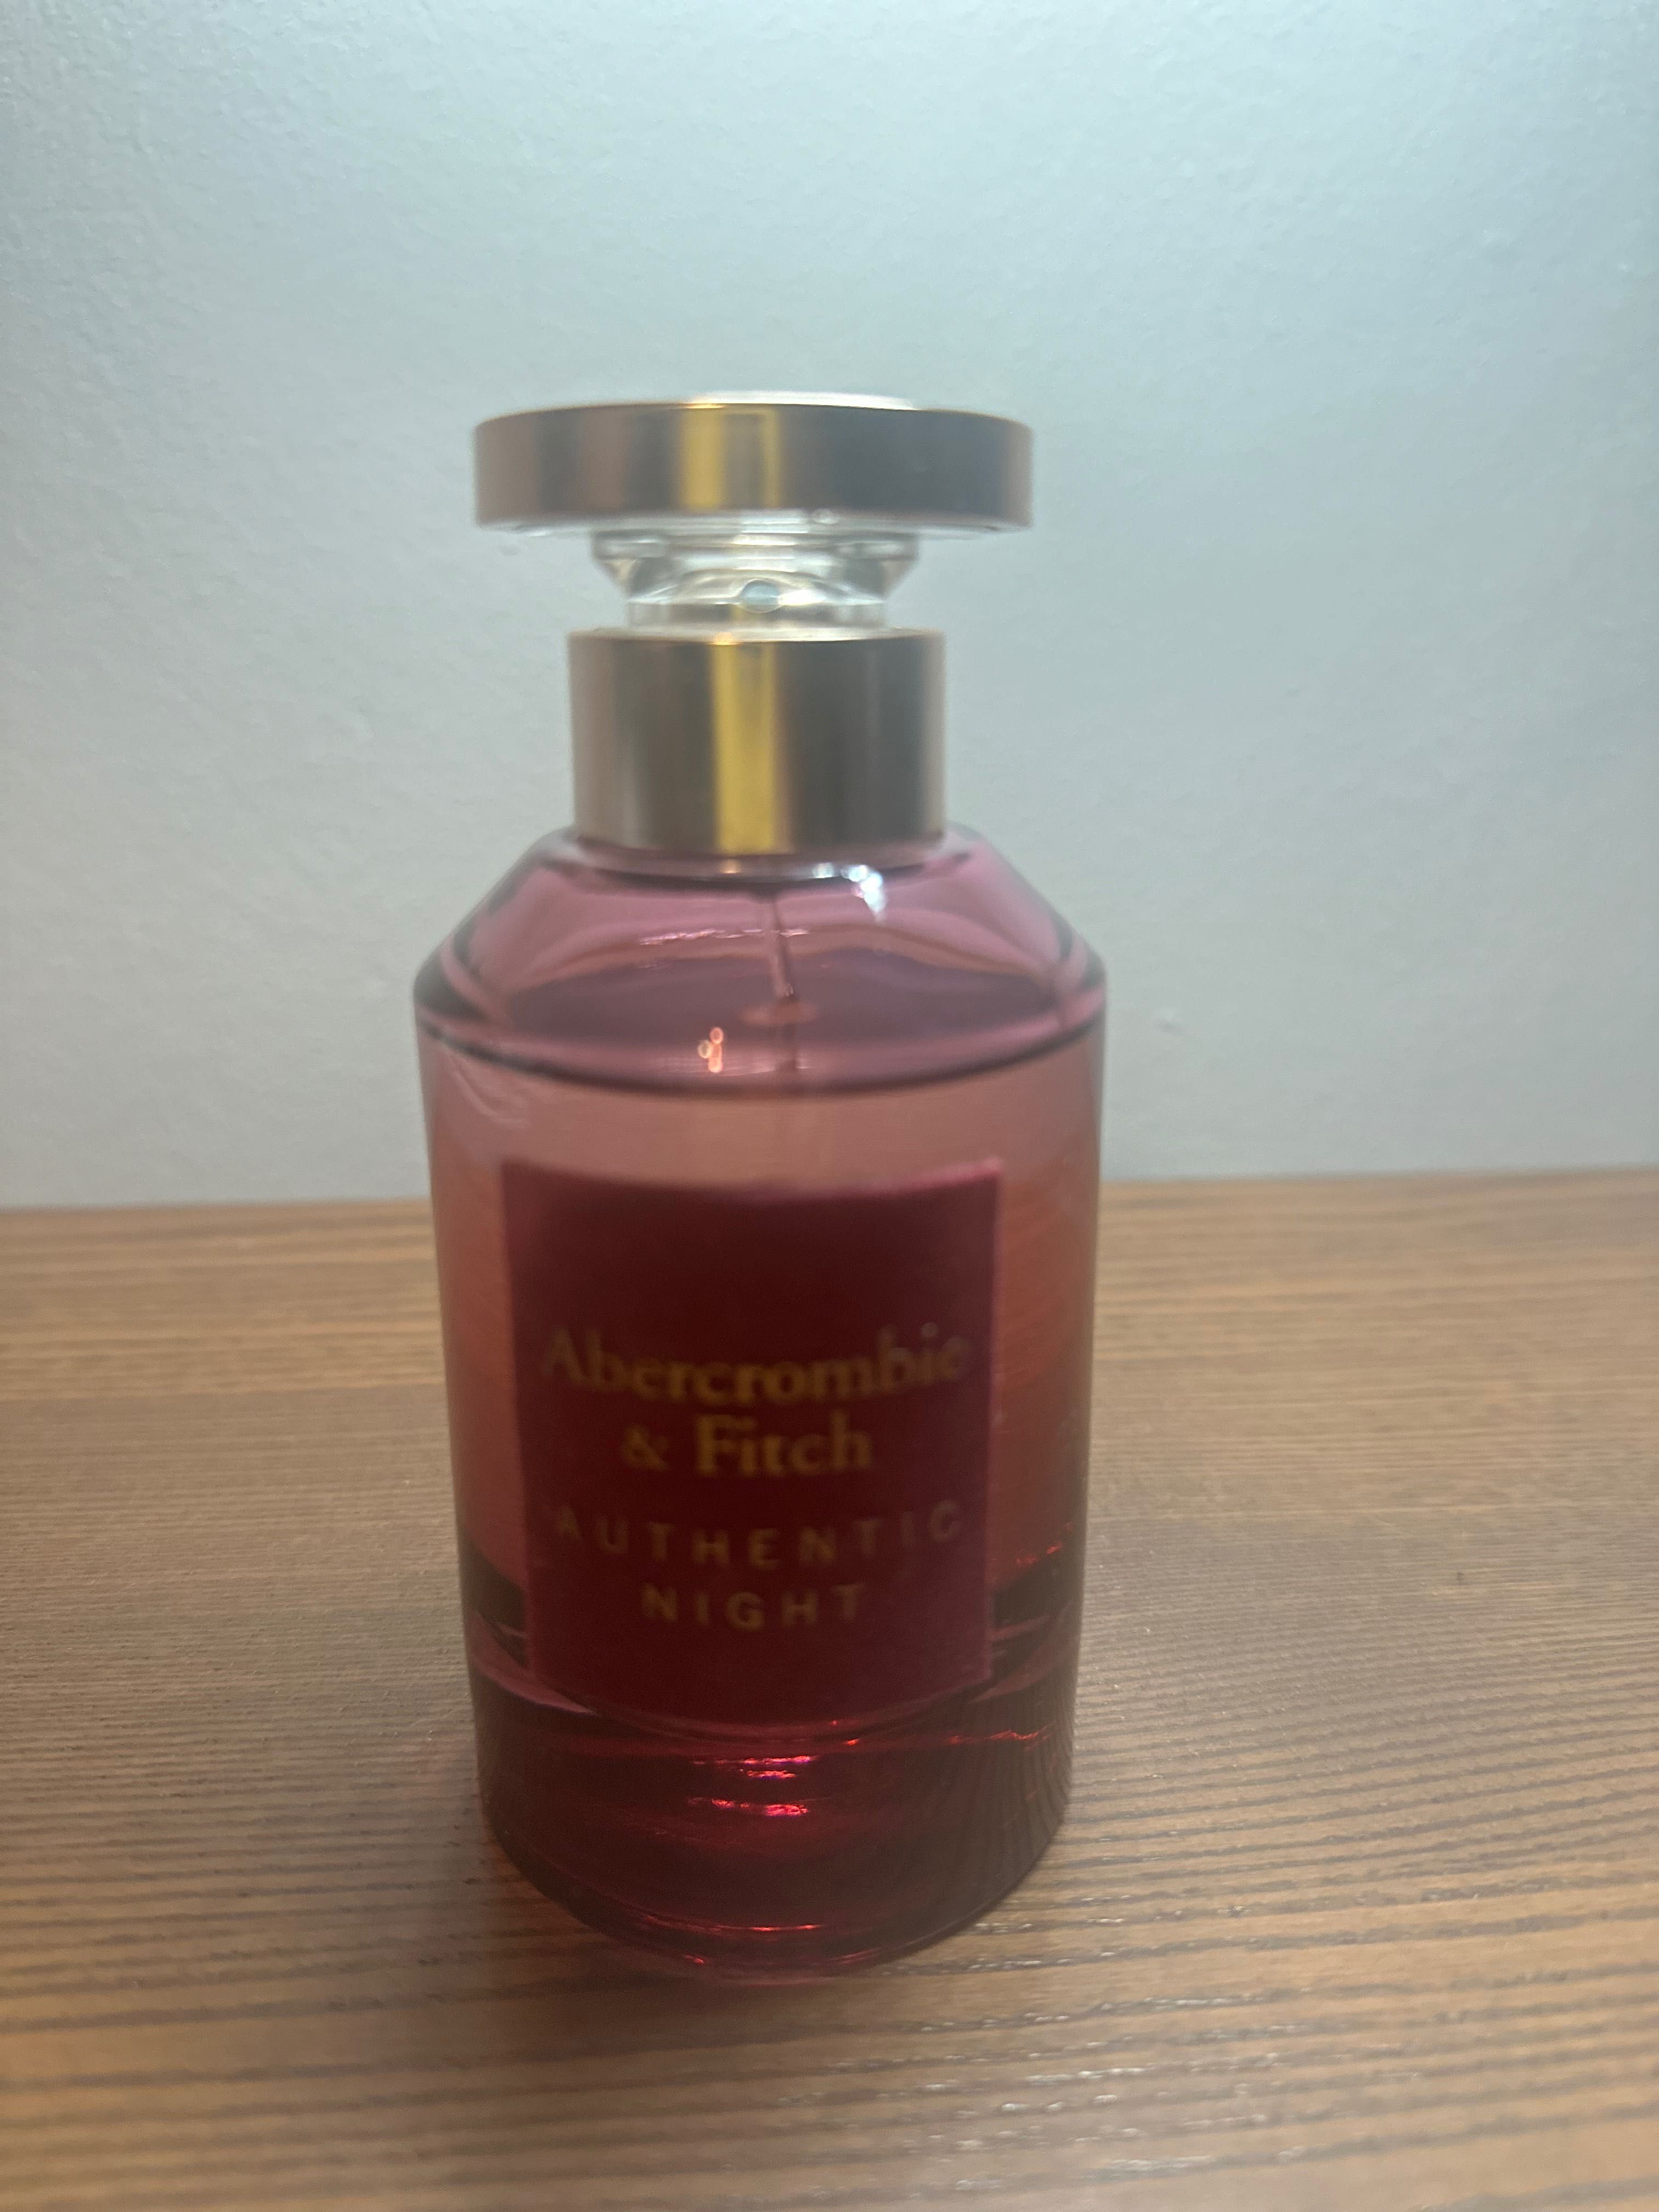 Abercrombie & Fitch Authentic Night Woman woda perfumowana 100 ml